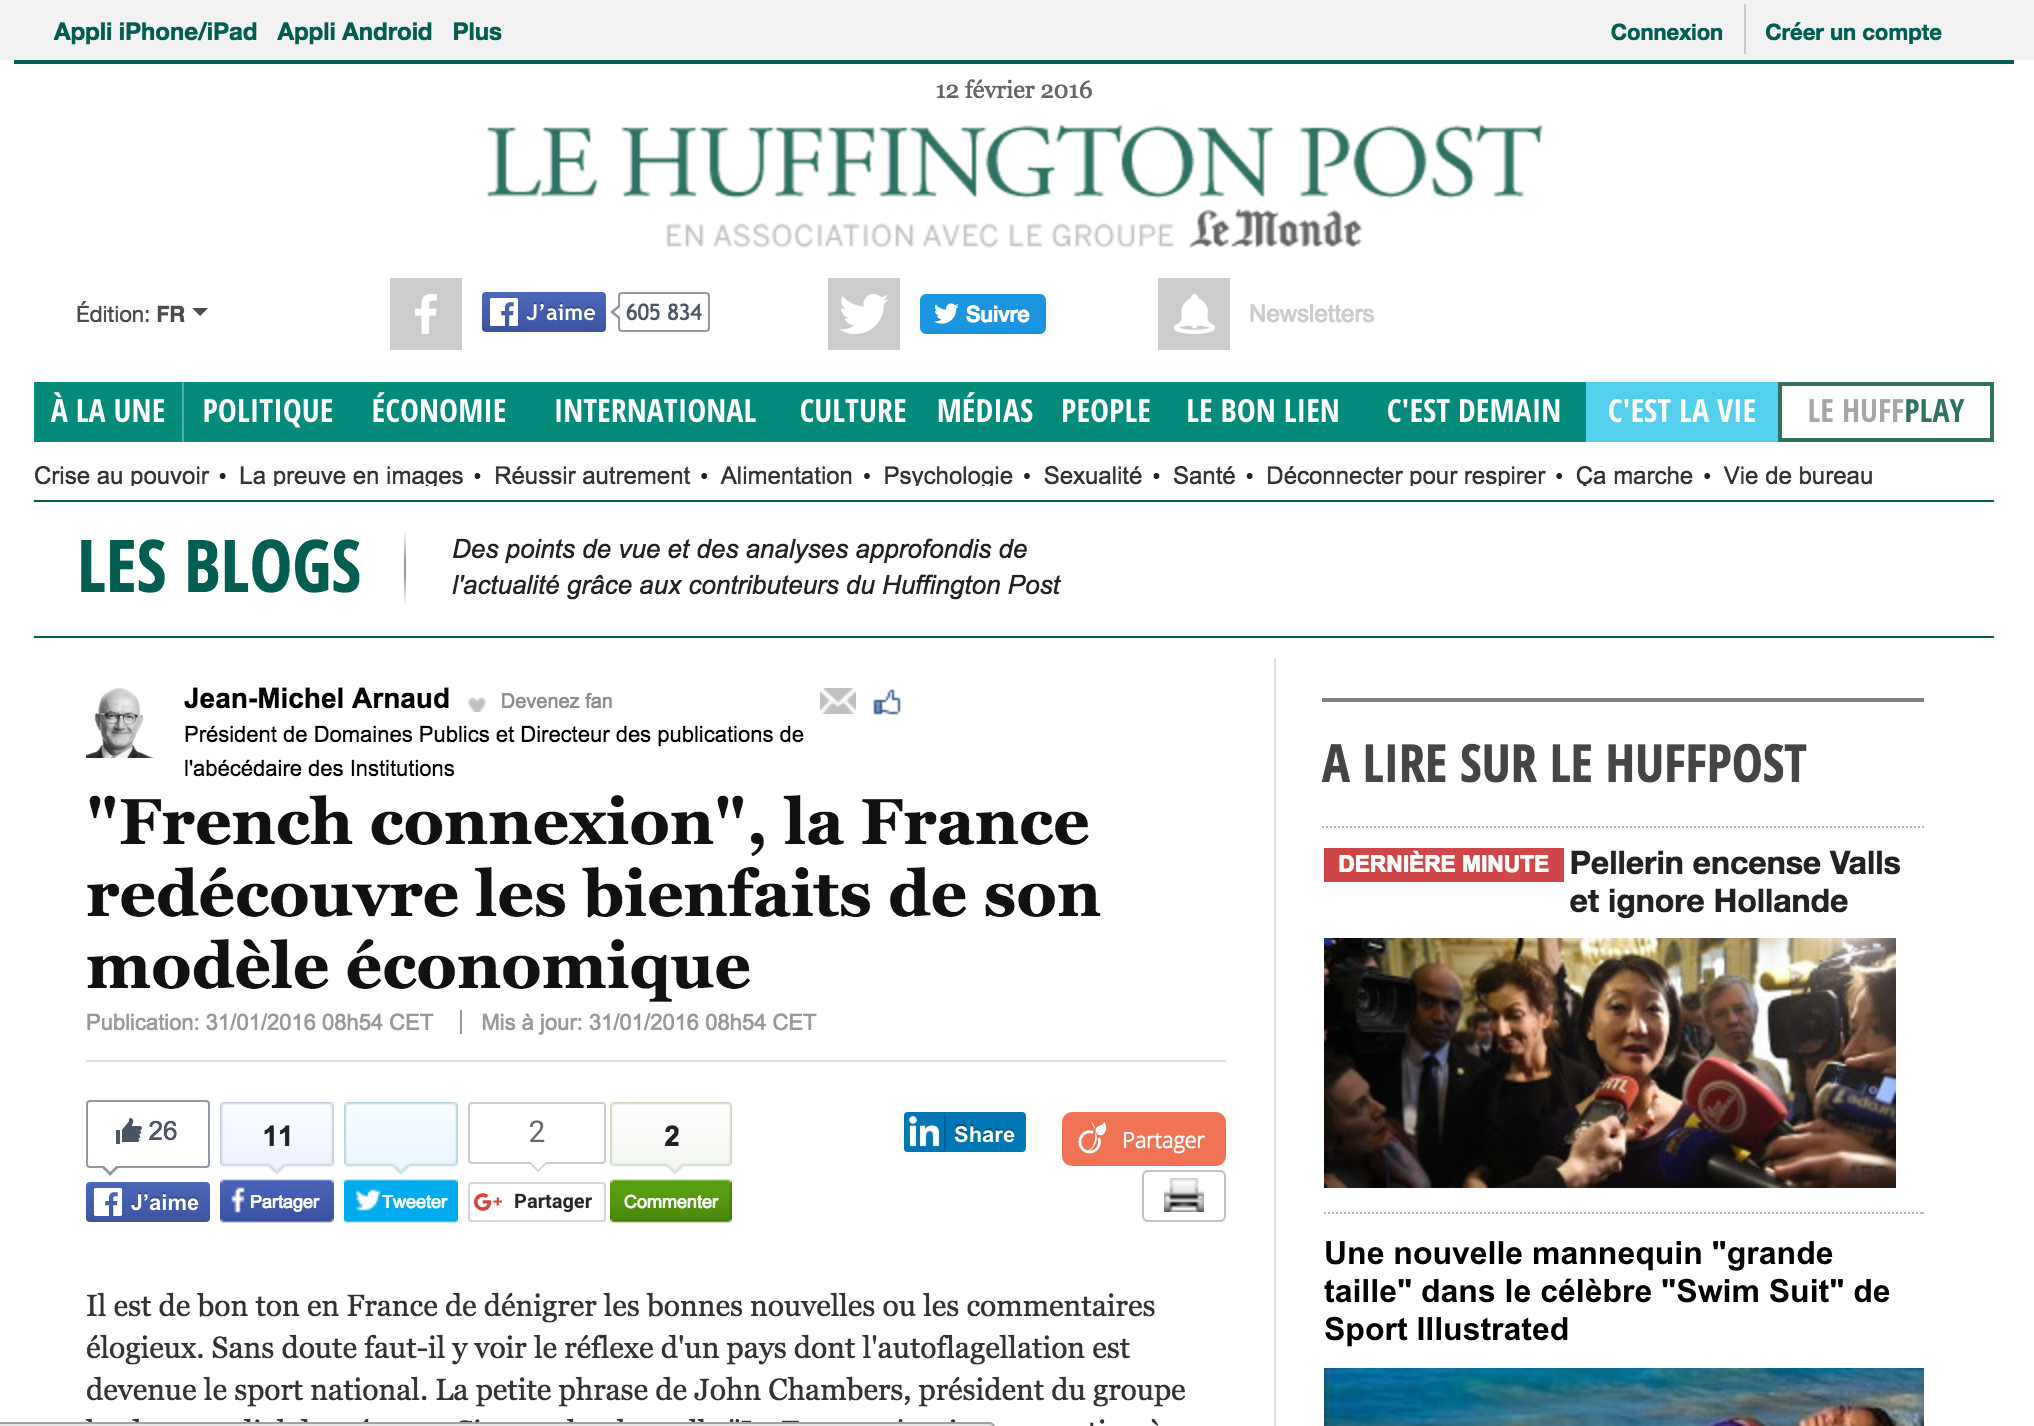 « French connexion », la France redécouvre les bienfaits de son modèle économique